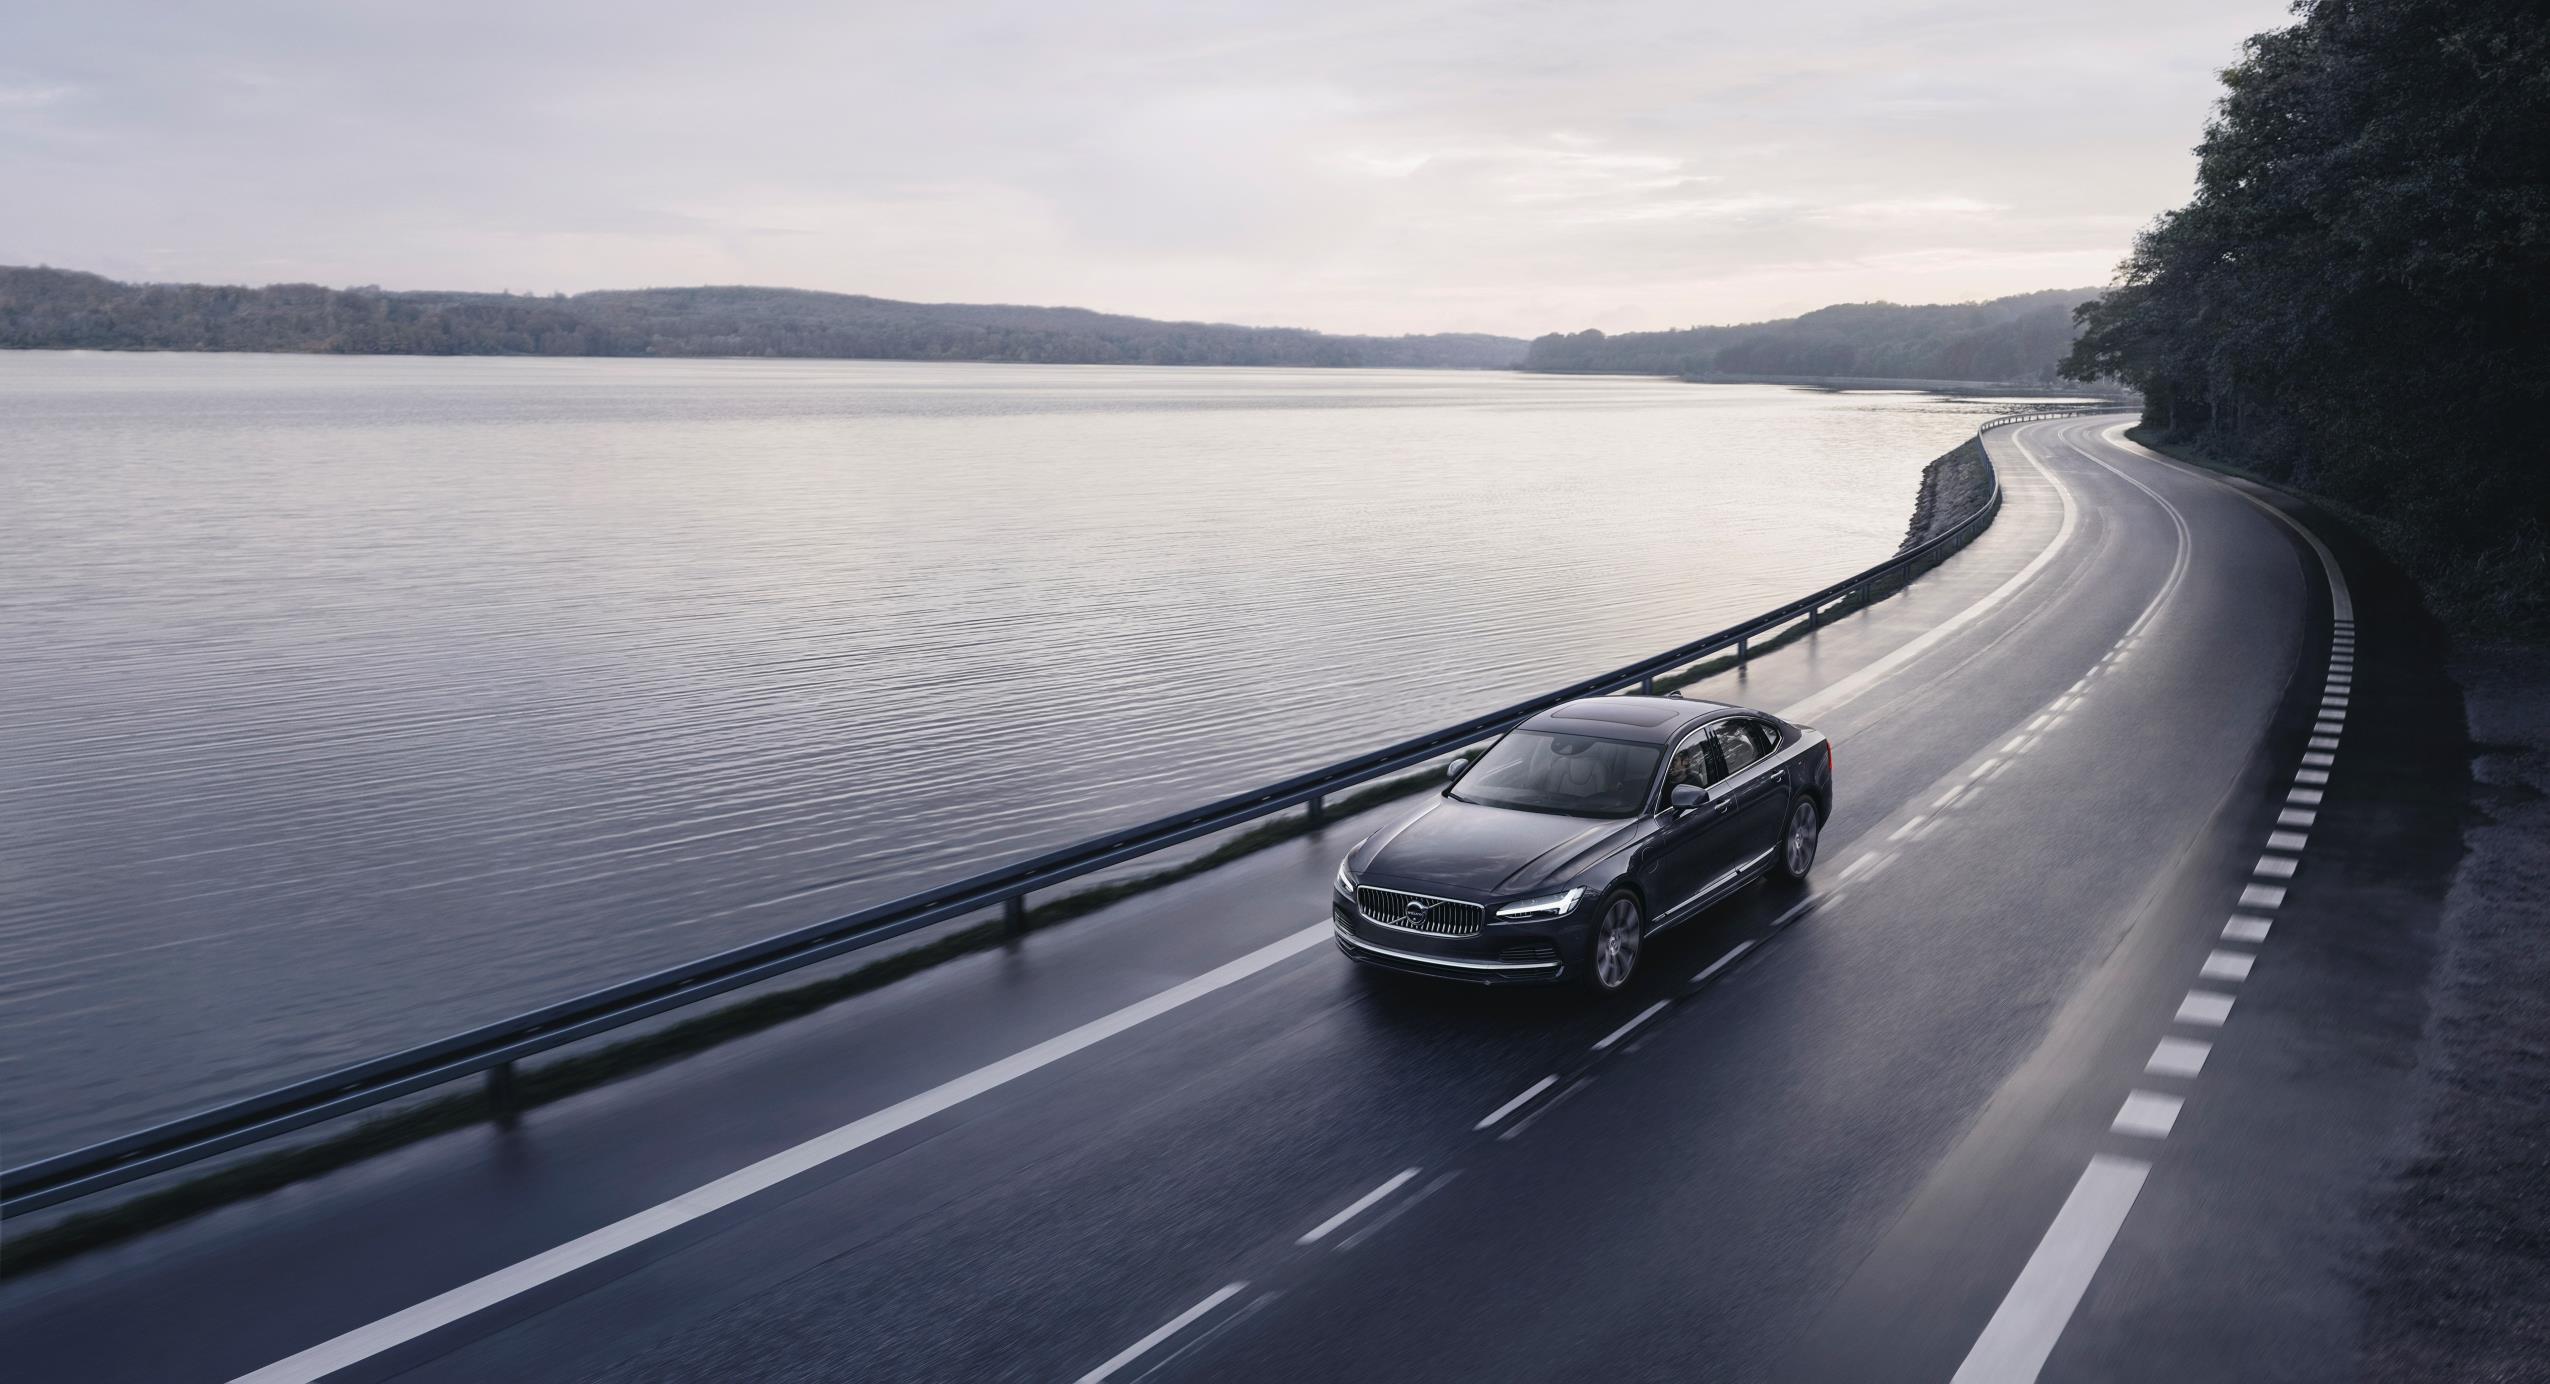 Velocidad limitada a 180 km/h y Care Key en todos los Volvo